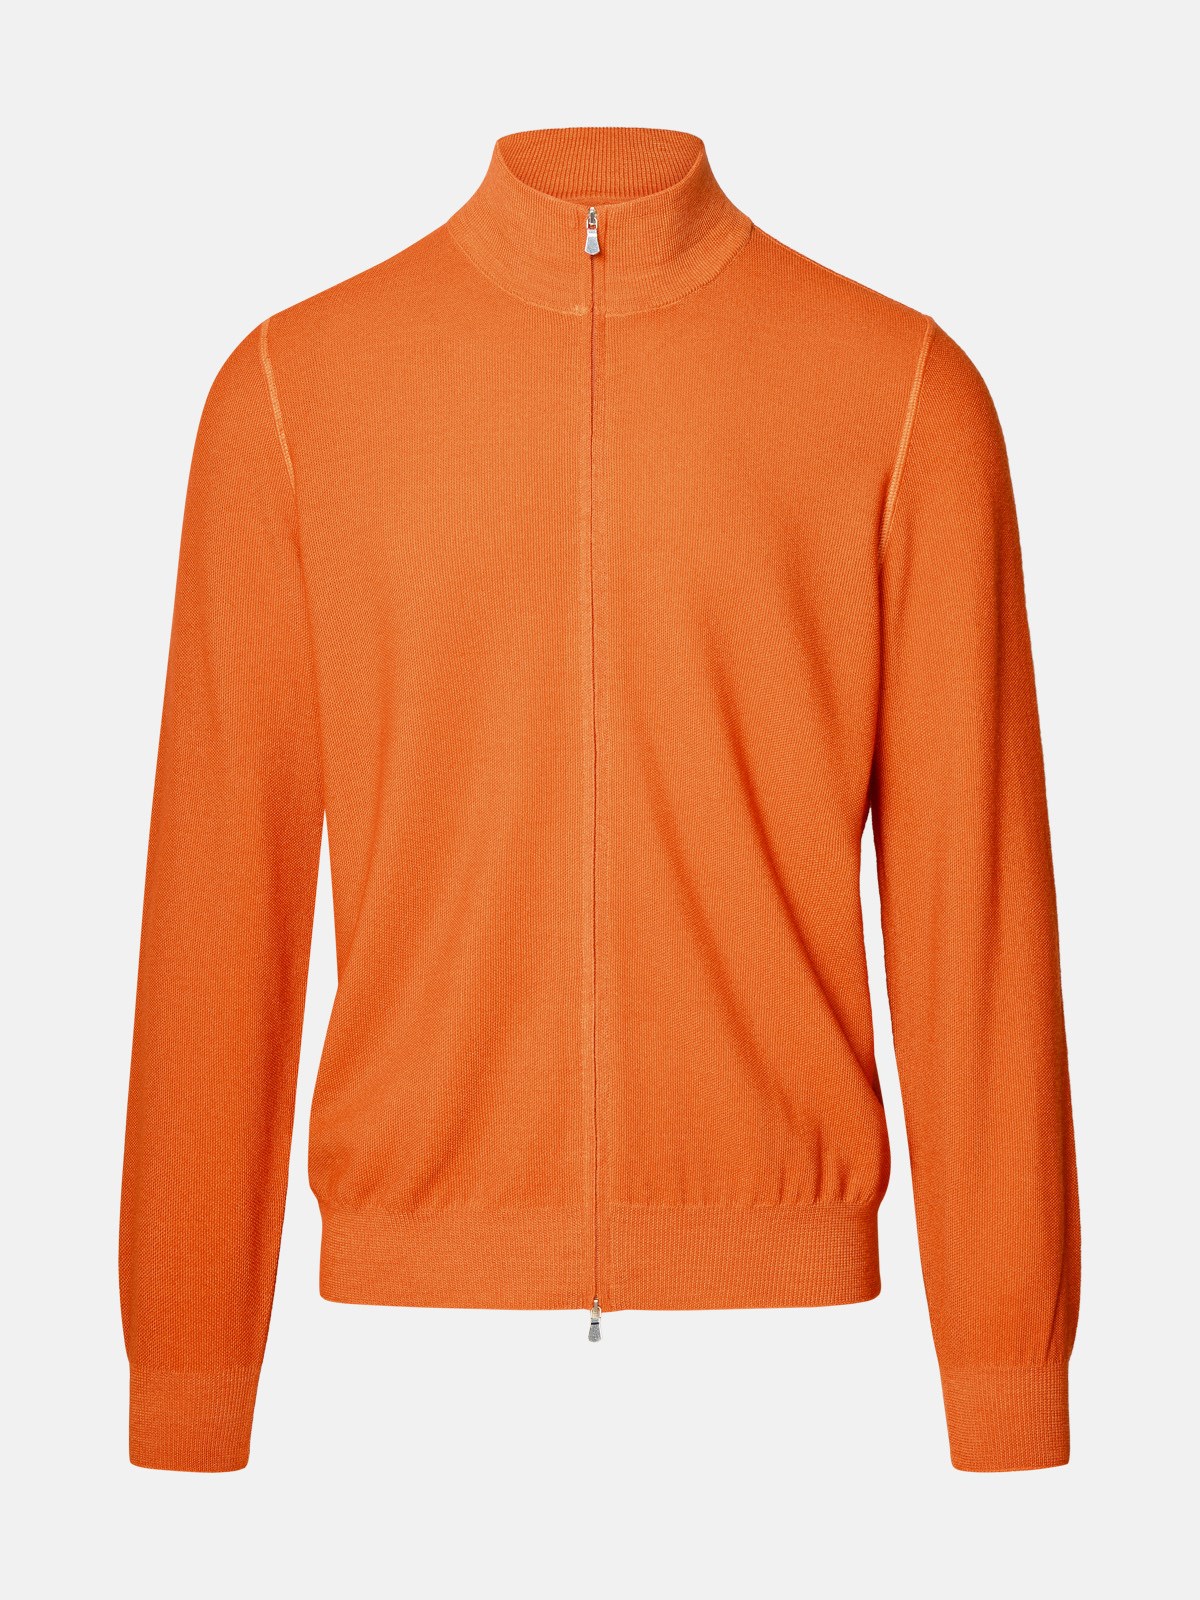 Shop Gran Sasso Orange Virgin Wool Sweater